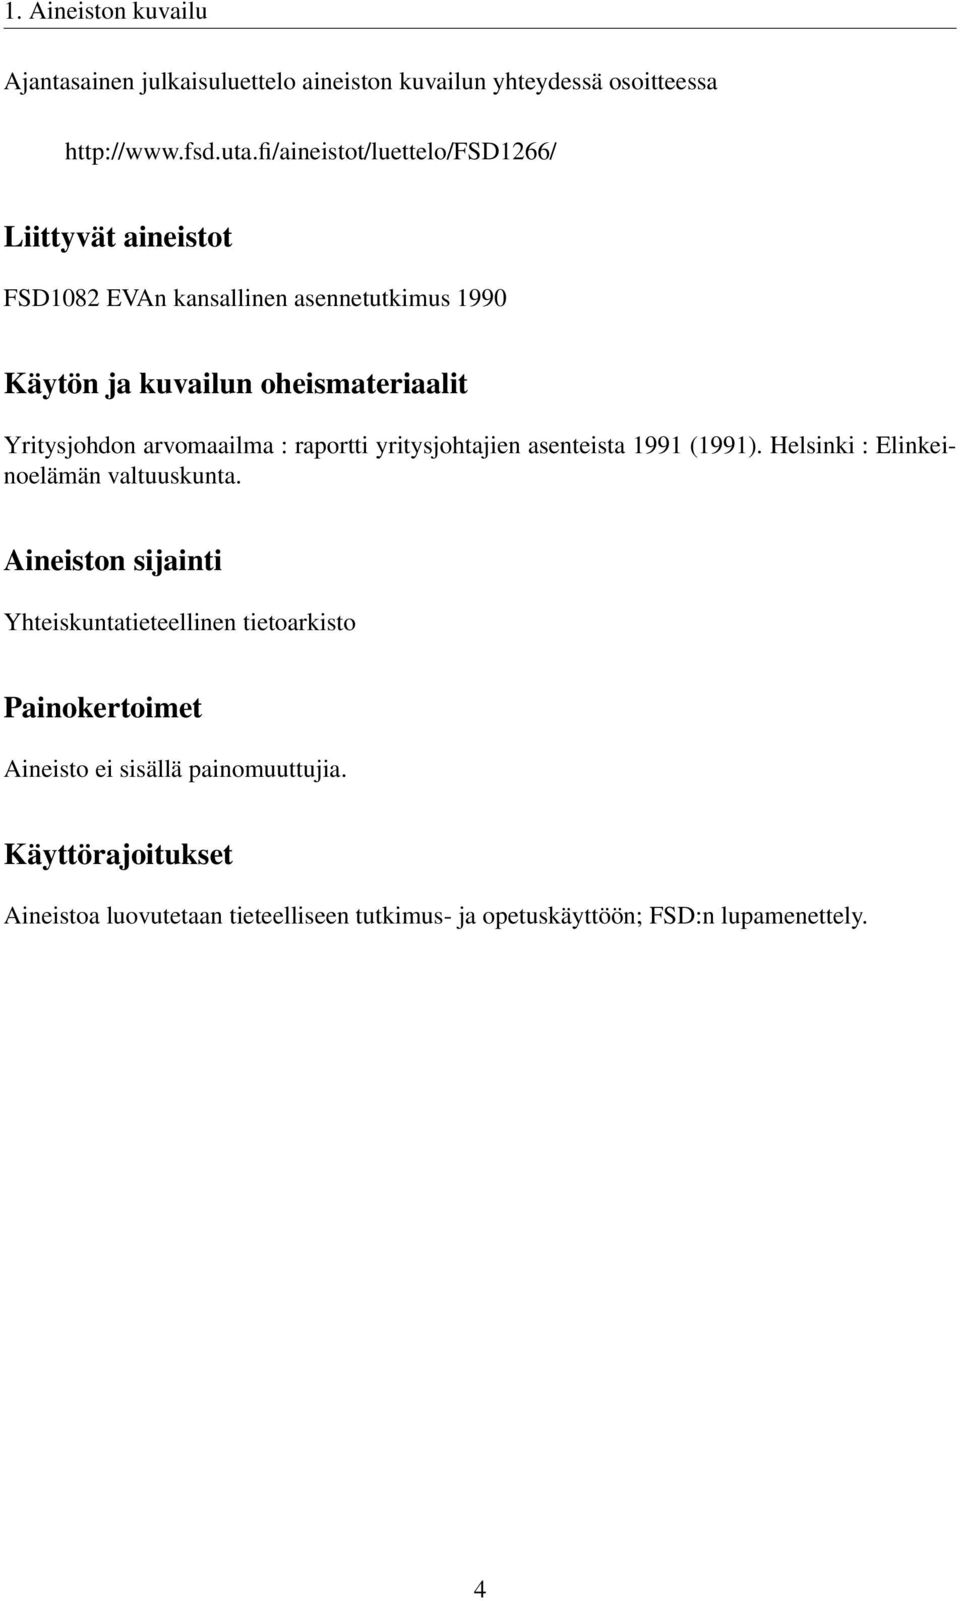 Yritysjohdon arvomaailma : raportti yritysjohtajien asenteista 1991 (1991). Helsinki : Elinkeinoelämän valtuuskunta.